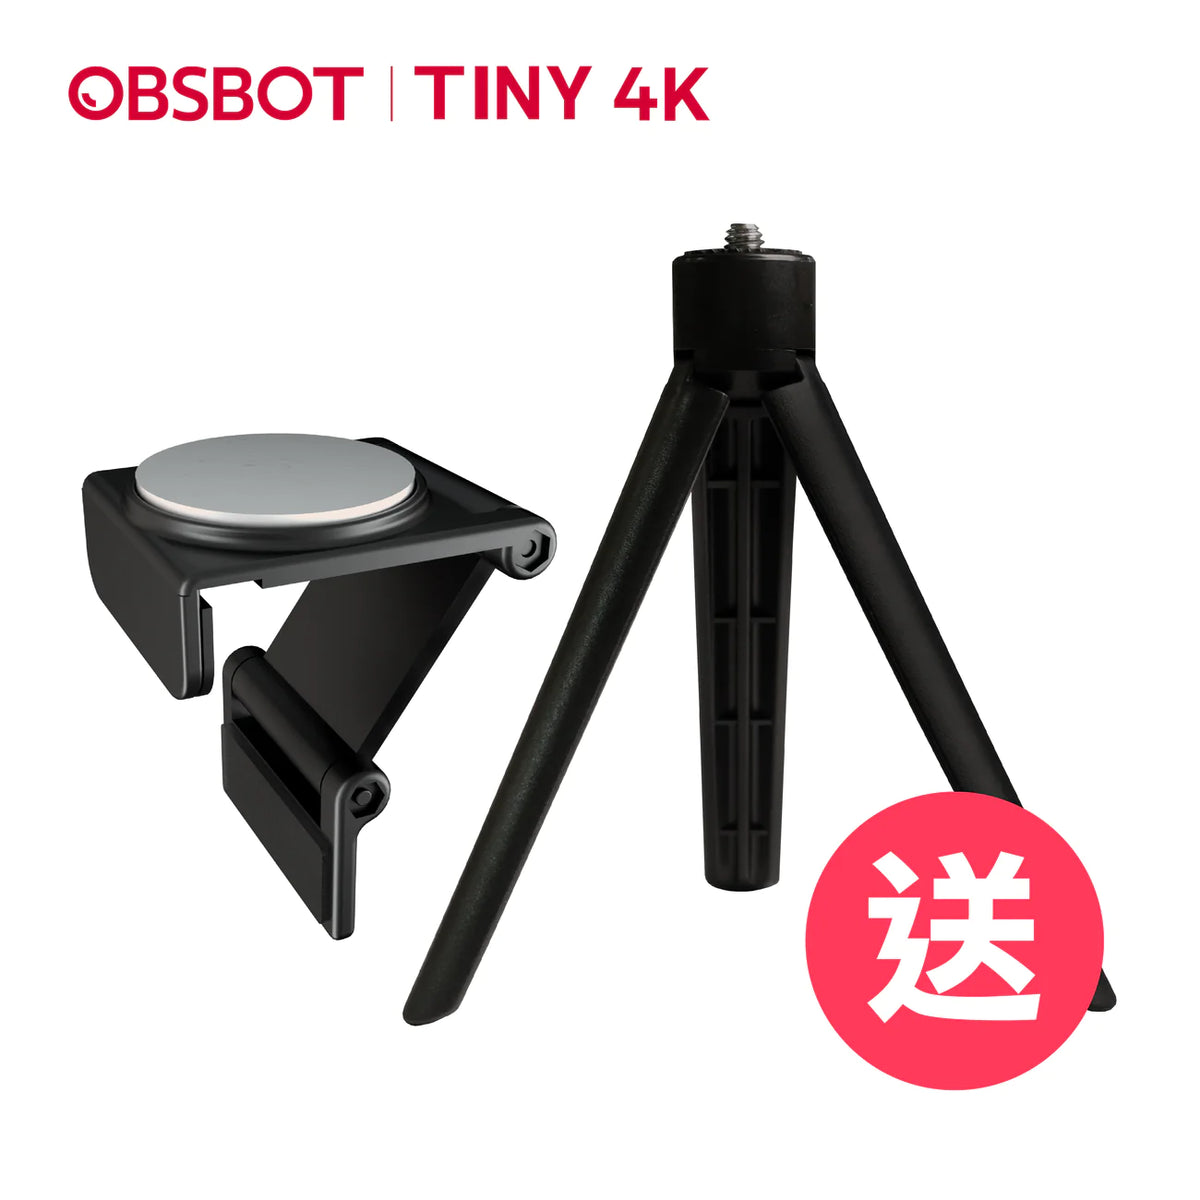 OBSBOT Tiny 4K｜AI人臉辨識與人物自動追蹤的PTZ網路攝影機+遙控器+三腳架